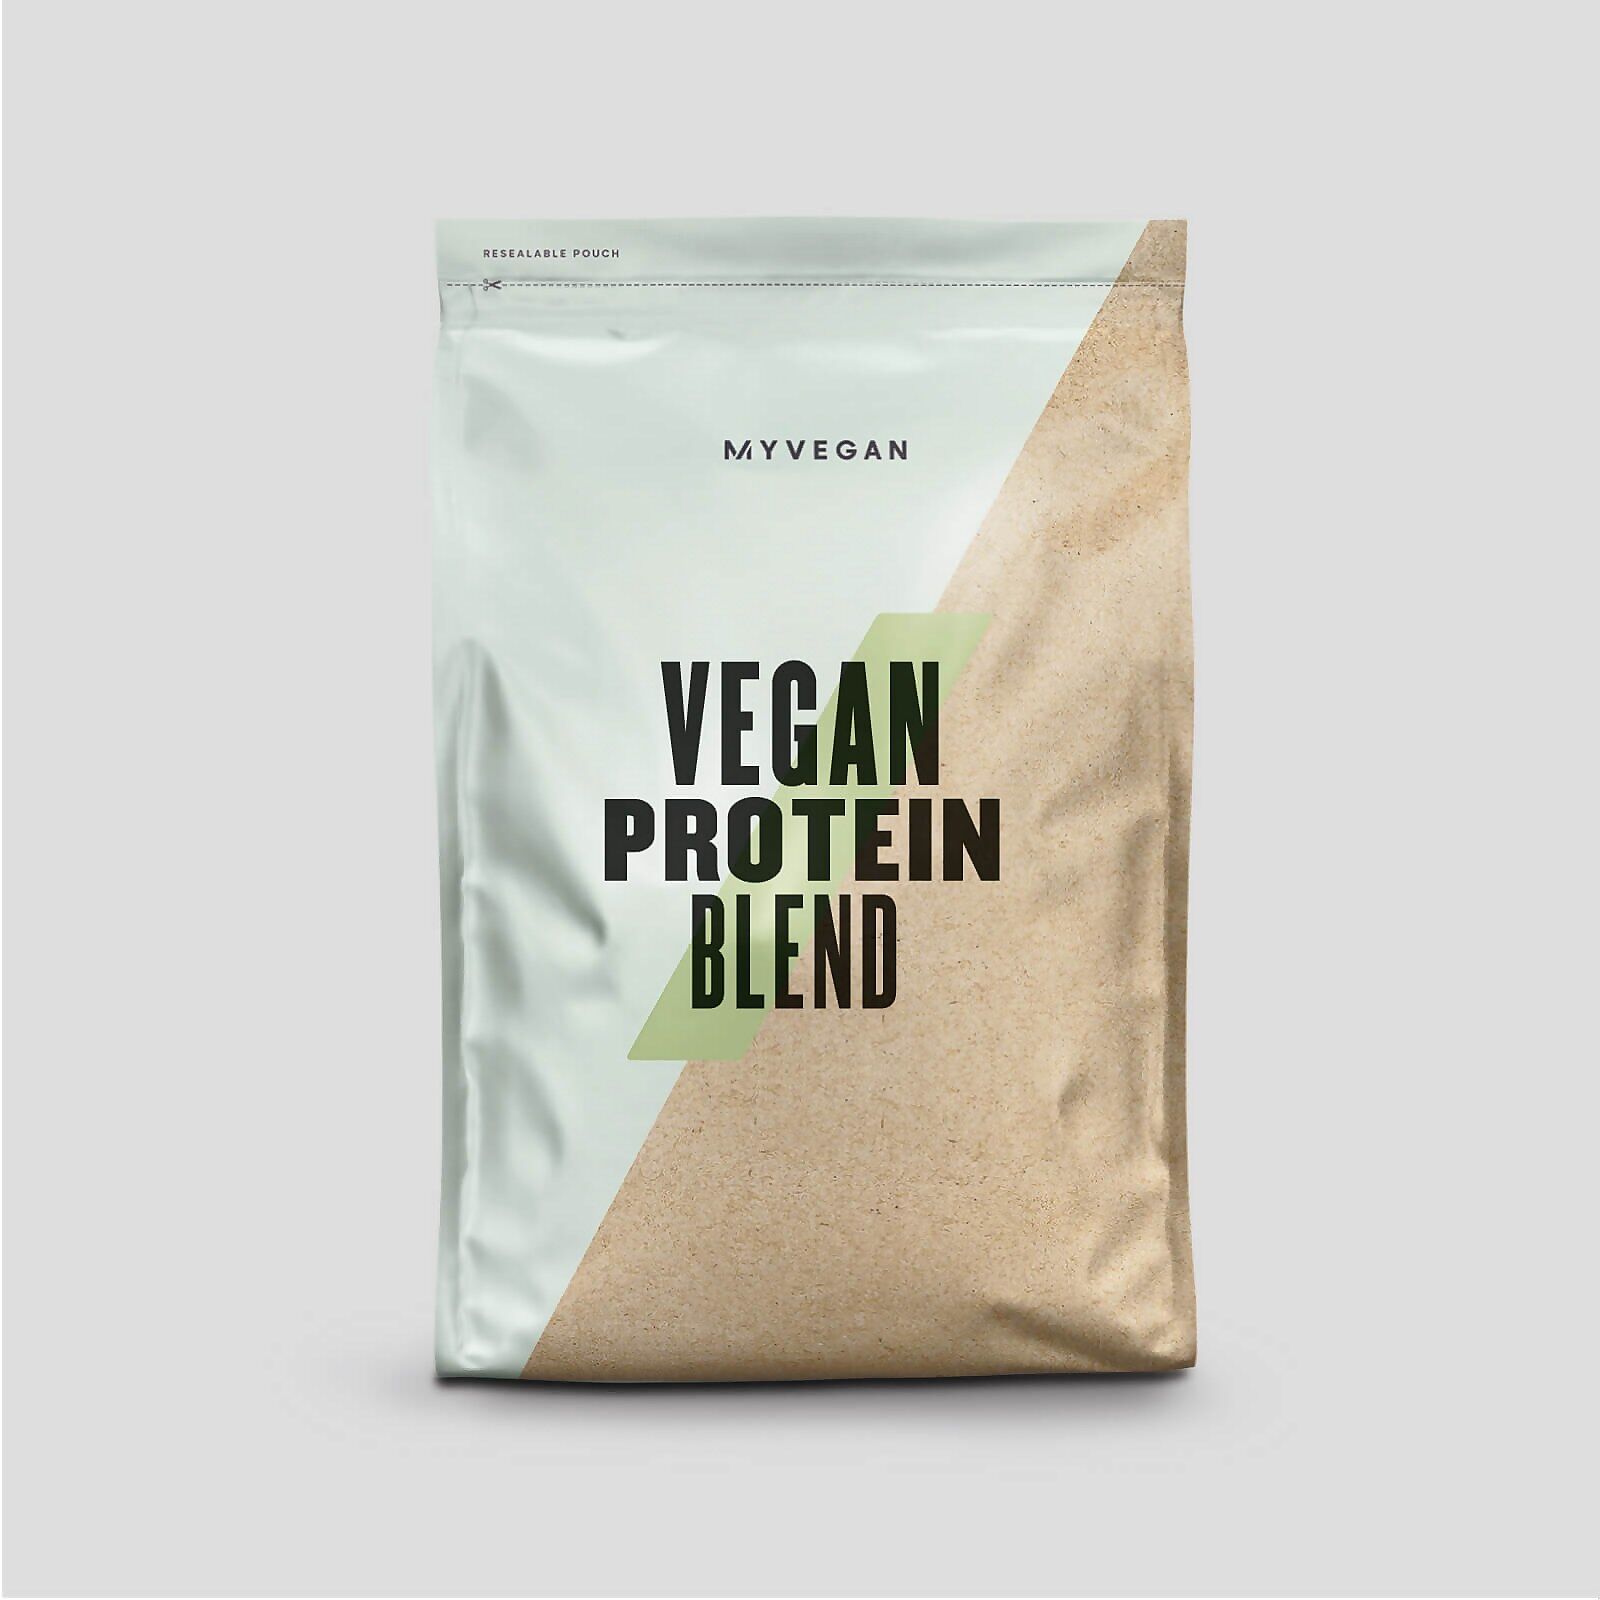 Myprotein Vegan Protein Blend - 1kg - Unflavoured